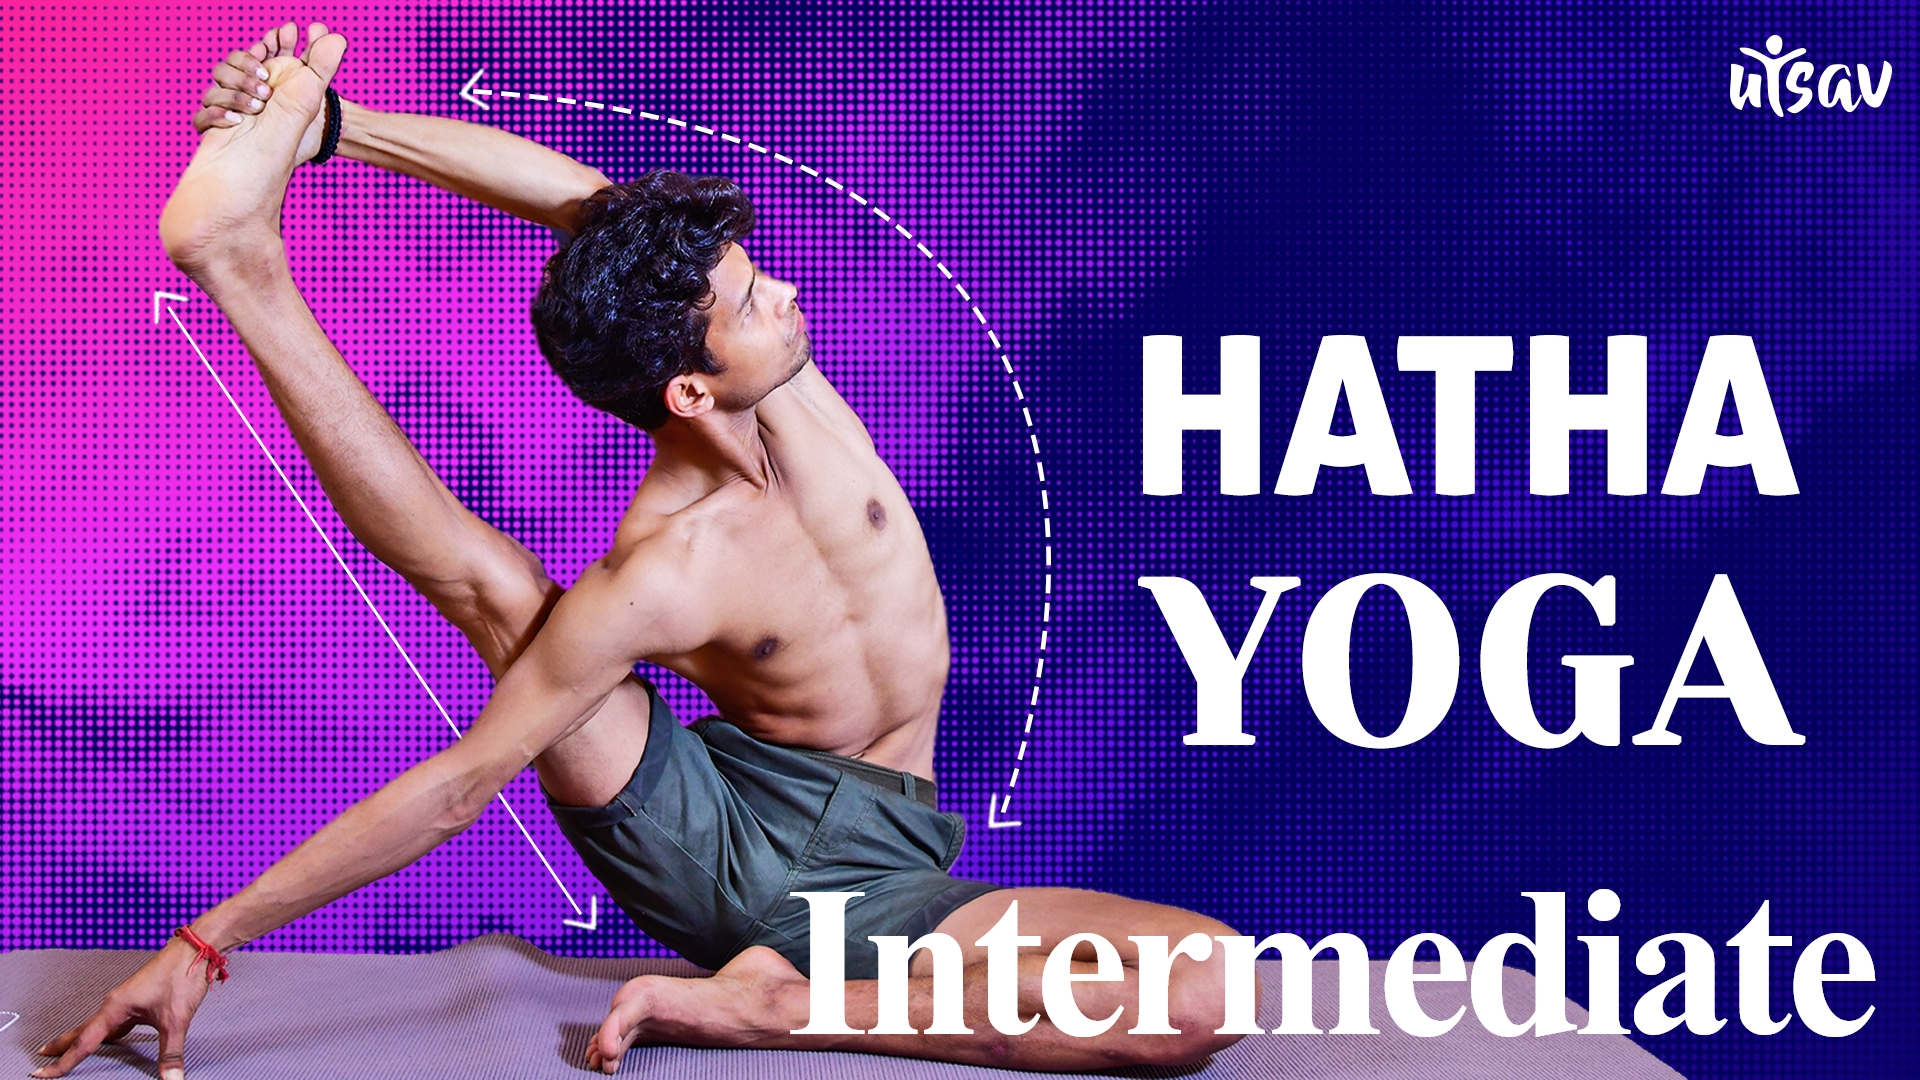 Hatha Yoga For Beginners, Yoga for Flexibility